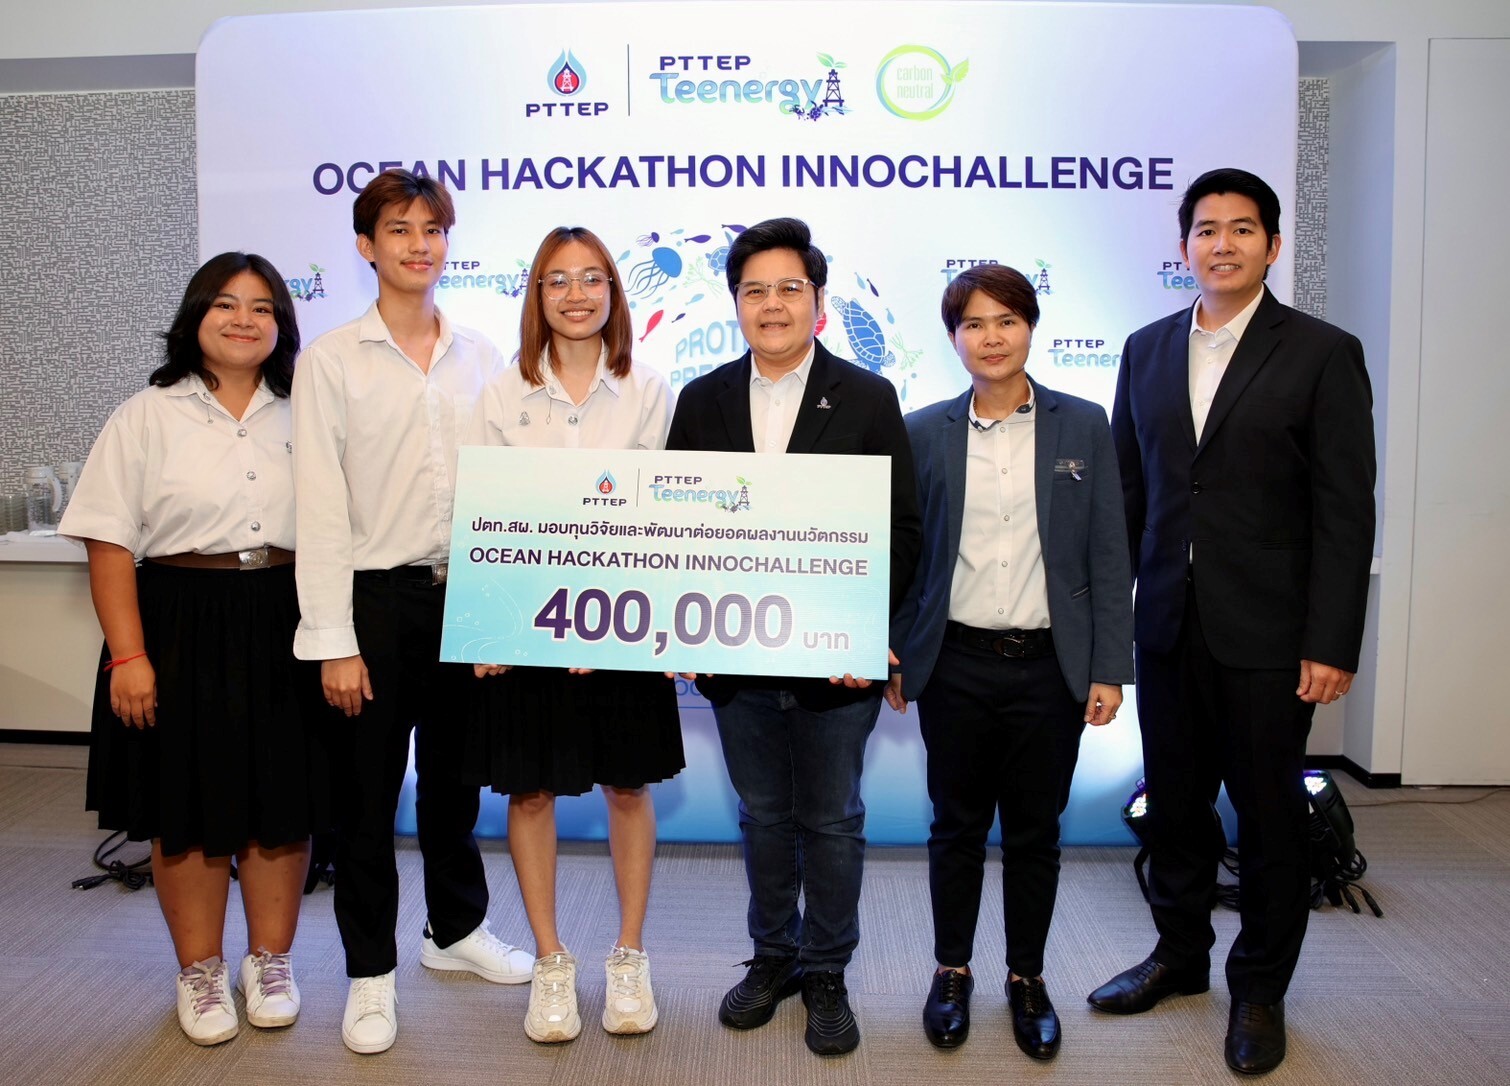 ปตท.สผ. มอบรางวัลทีมนักศึกษาชนะการแข่งขัน "Ocean Hackathon InnoChallenge"